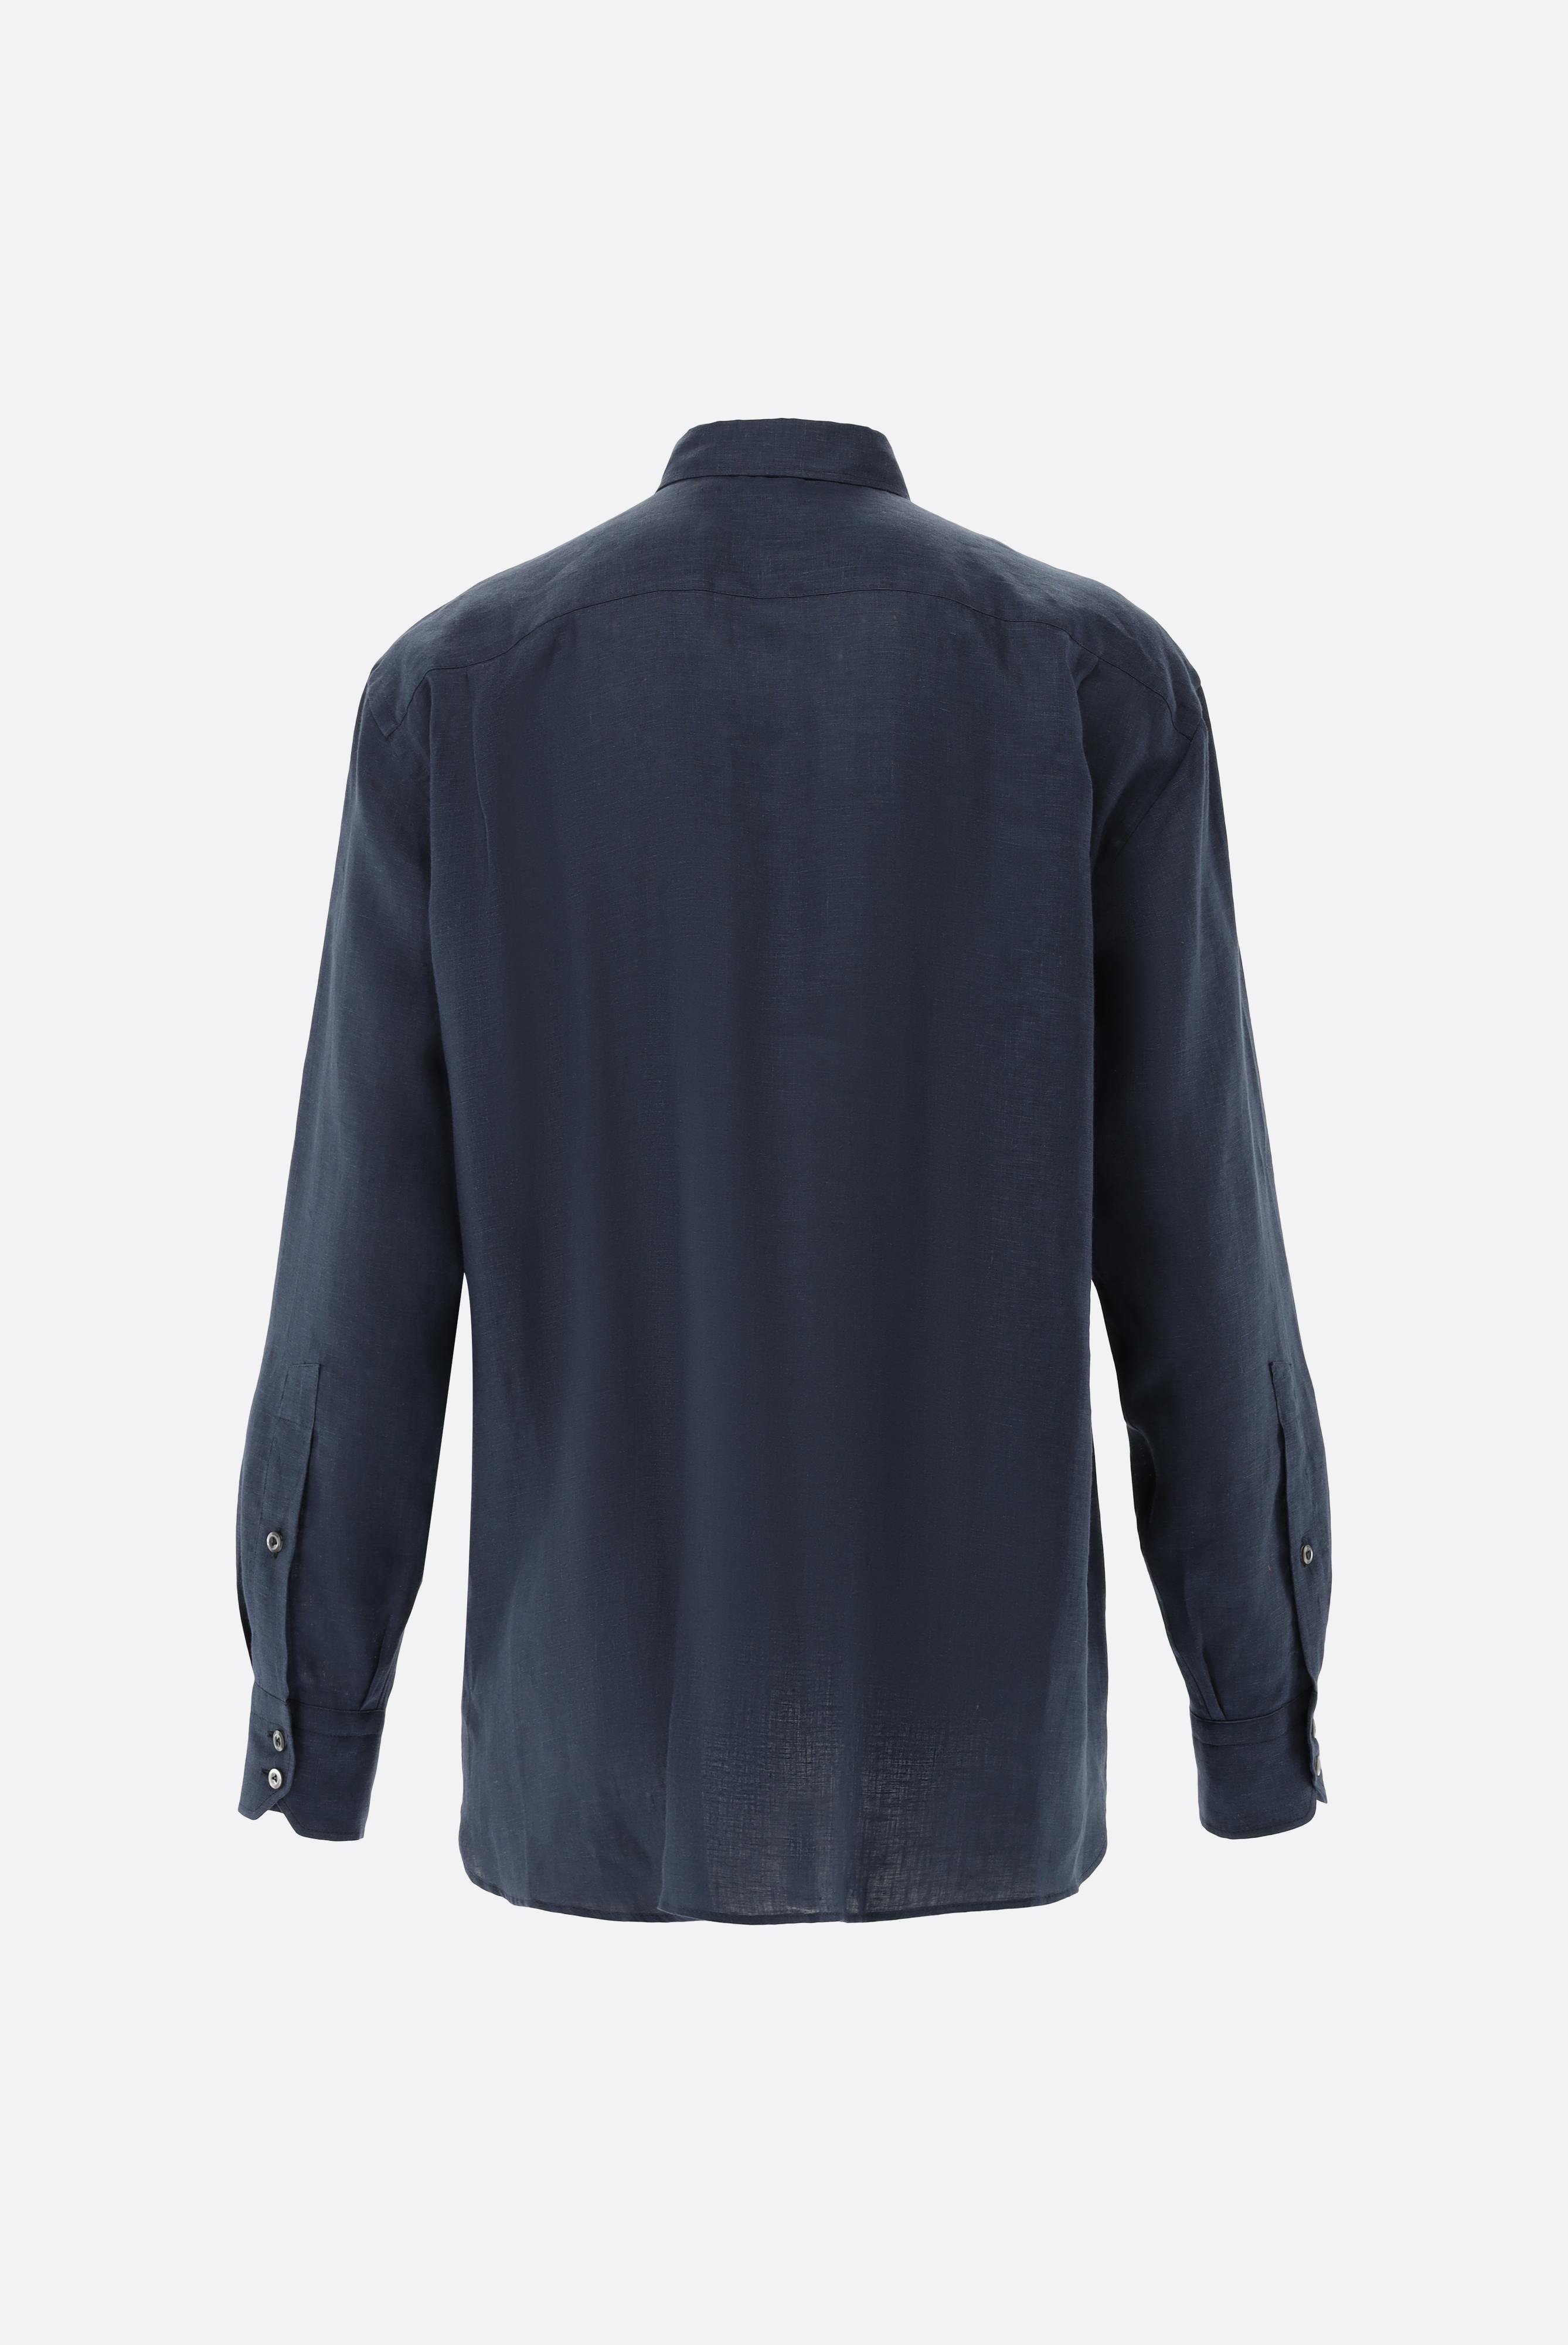 Casual Hemden+Leinenhemd mit Button-Down-Kragen+20.2026.9V.150555.785.45